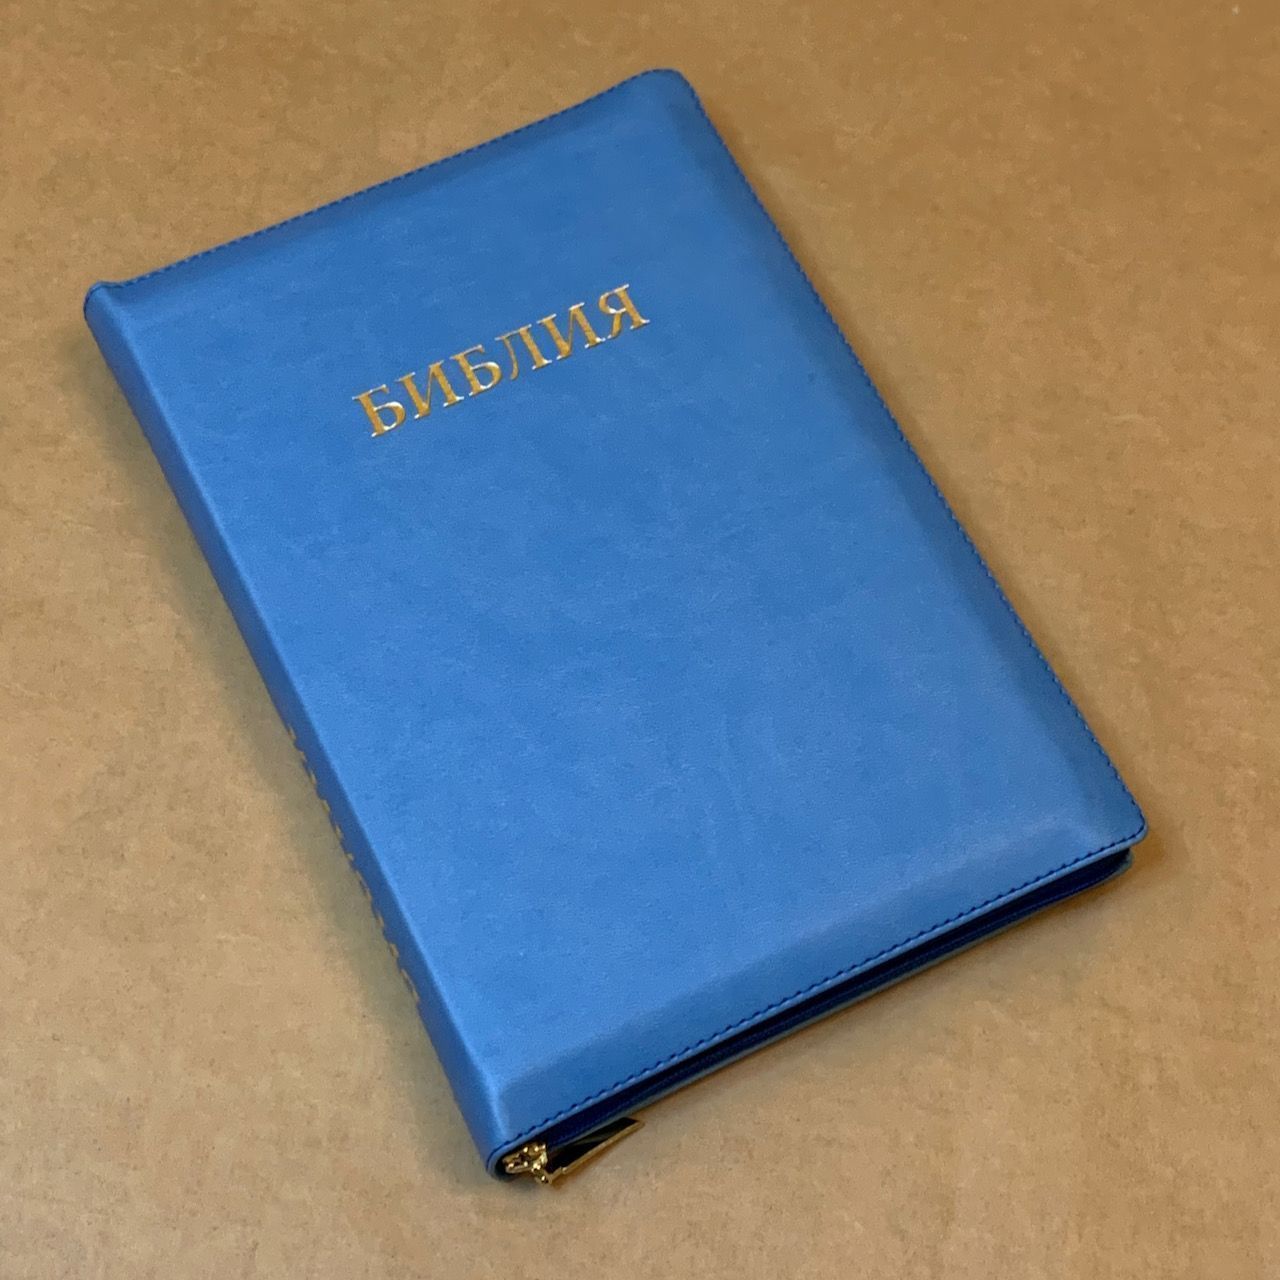 Библия 077z формат, переплет из искусственной кожи на молнии, цвет голубой, большой формат, 180*260 мм, цветные карты, крупный шрифт